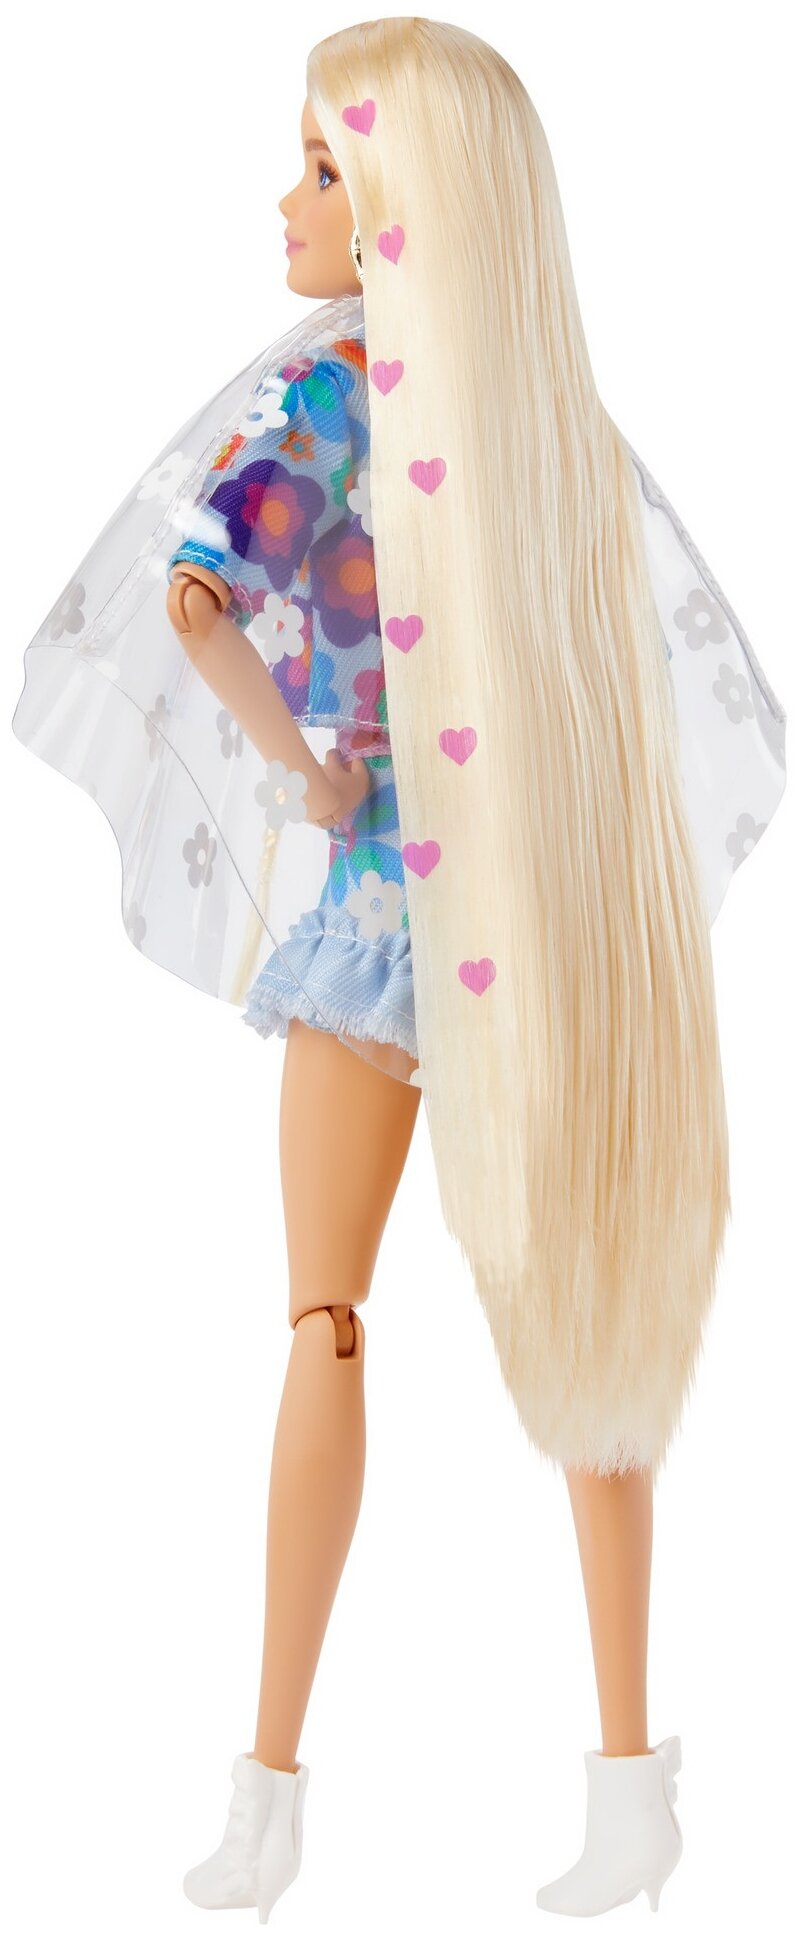 Barbie Кукла Экстра в одежде с цветочным принтом - фото №3